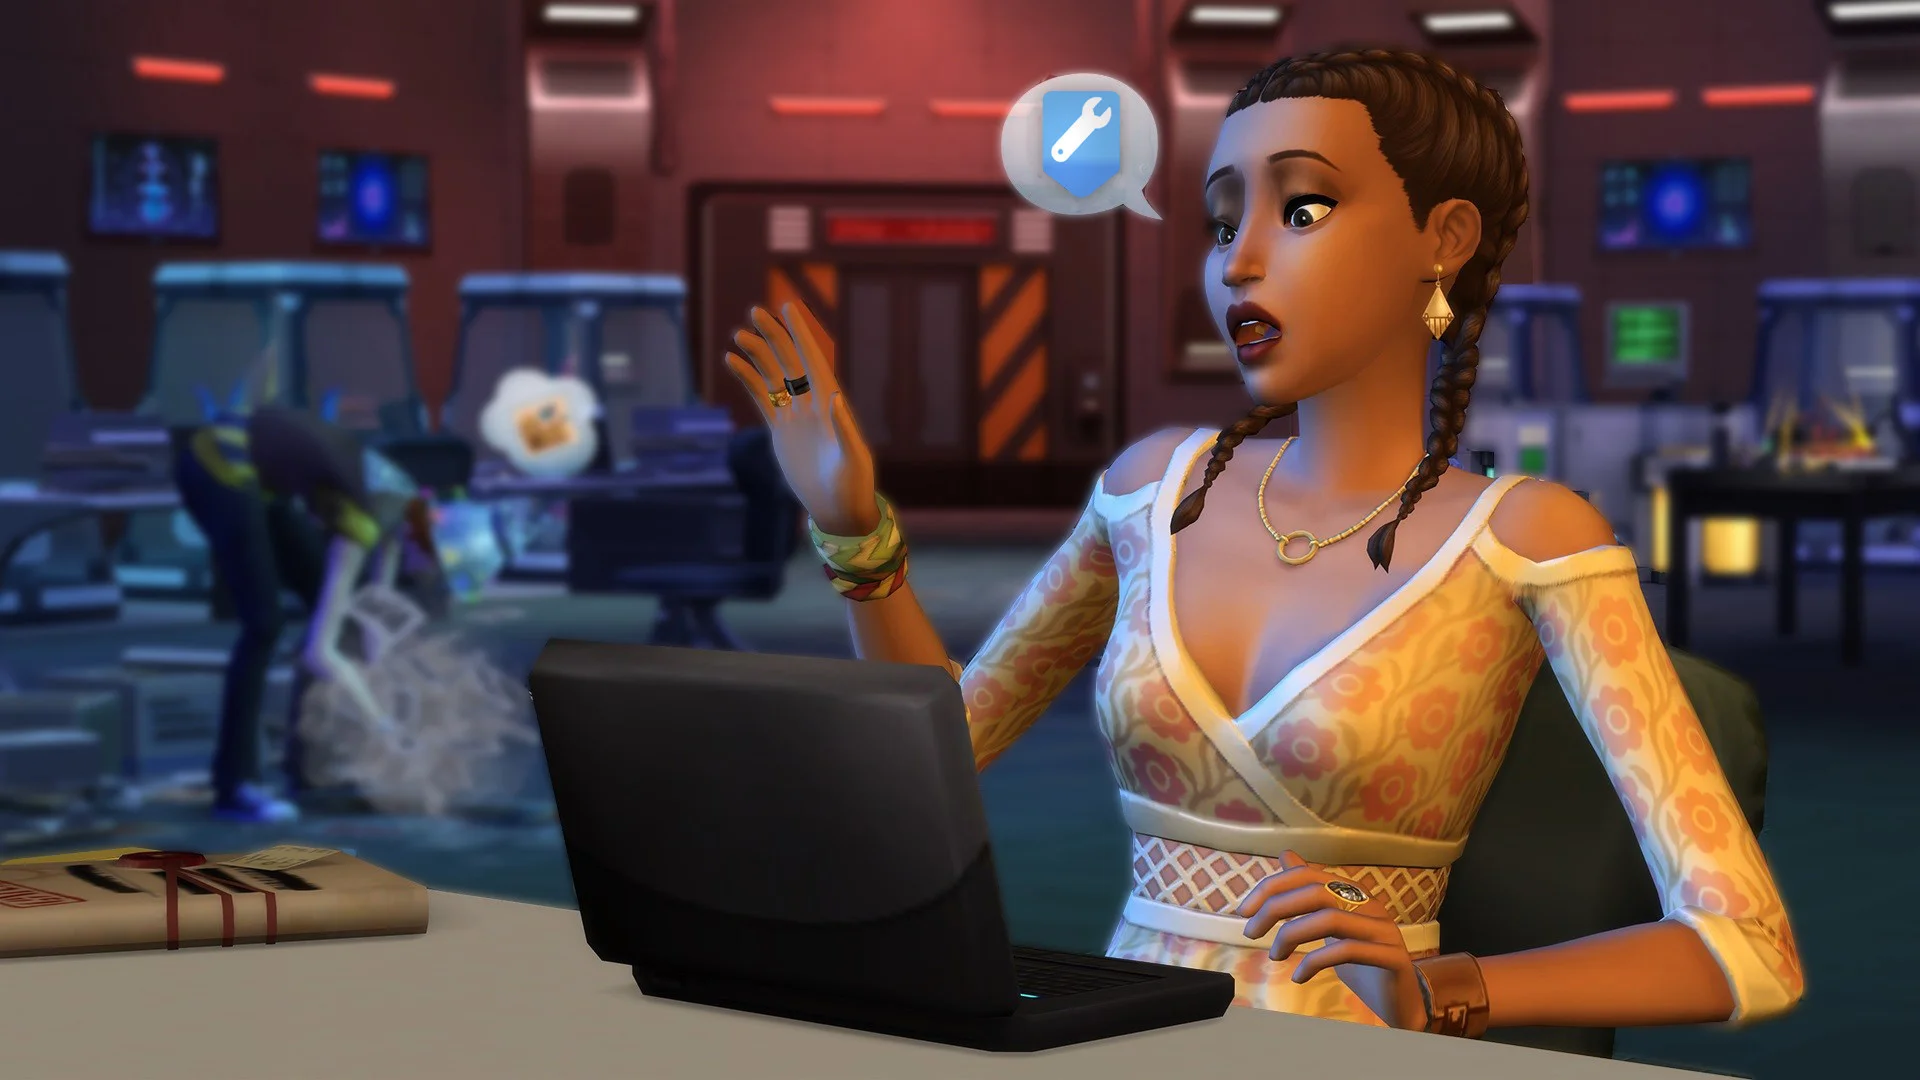 Гайд: Как устанавливать модификации в The Sims 4 - изображение обложка